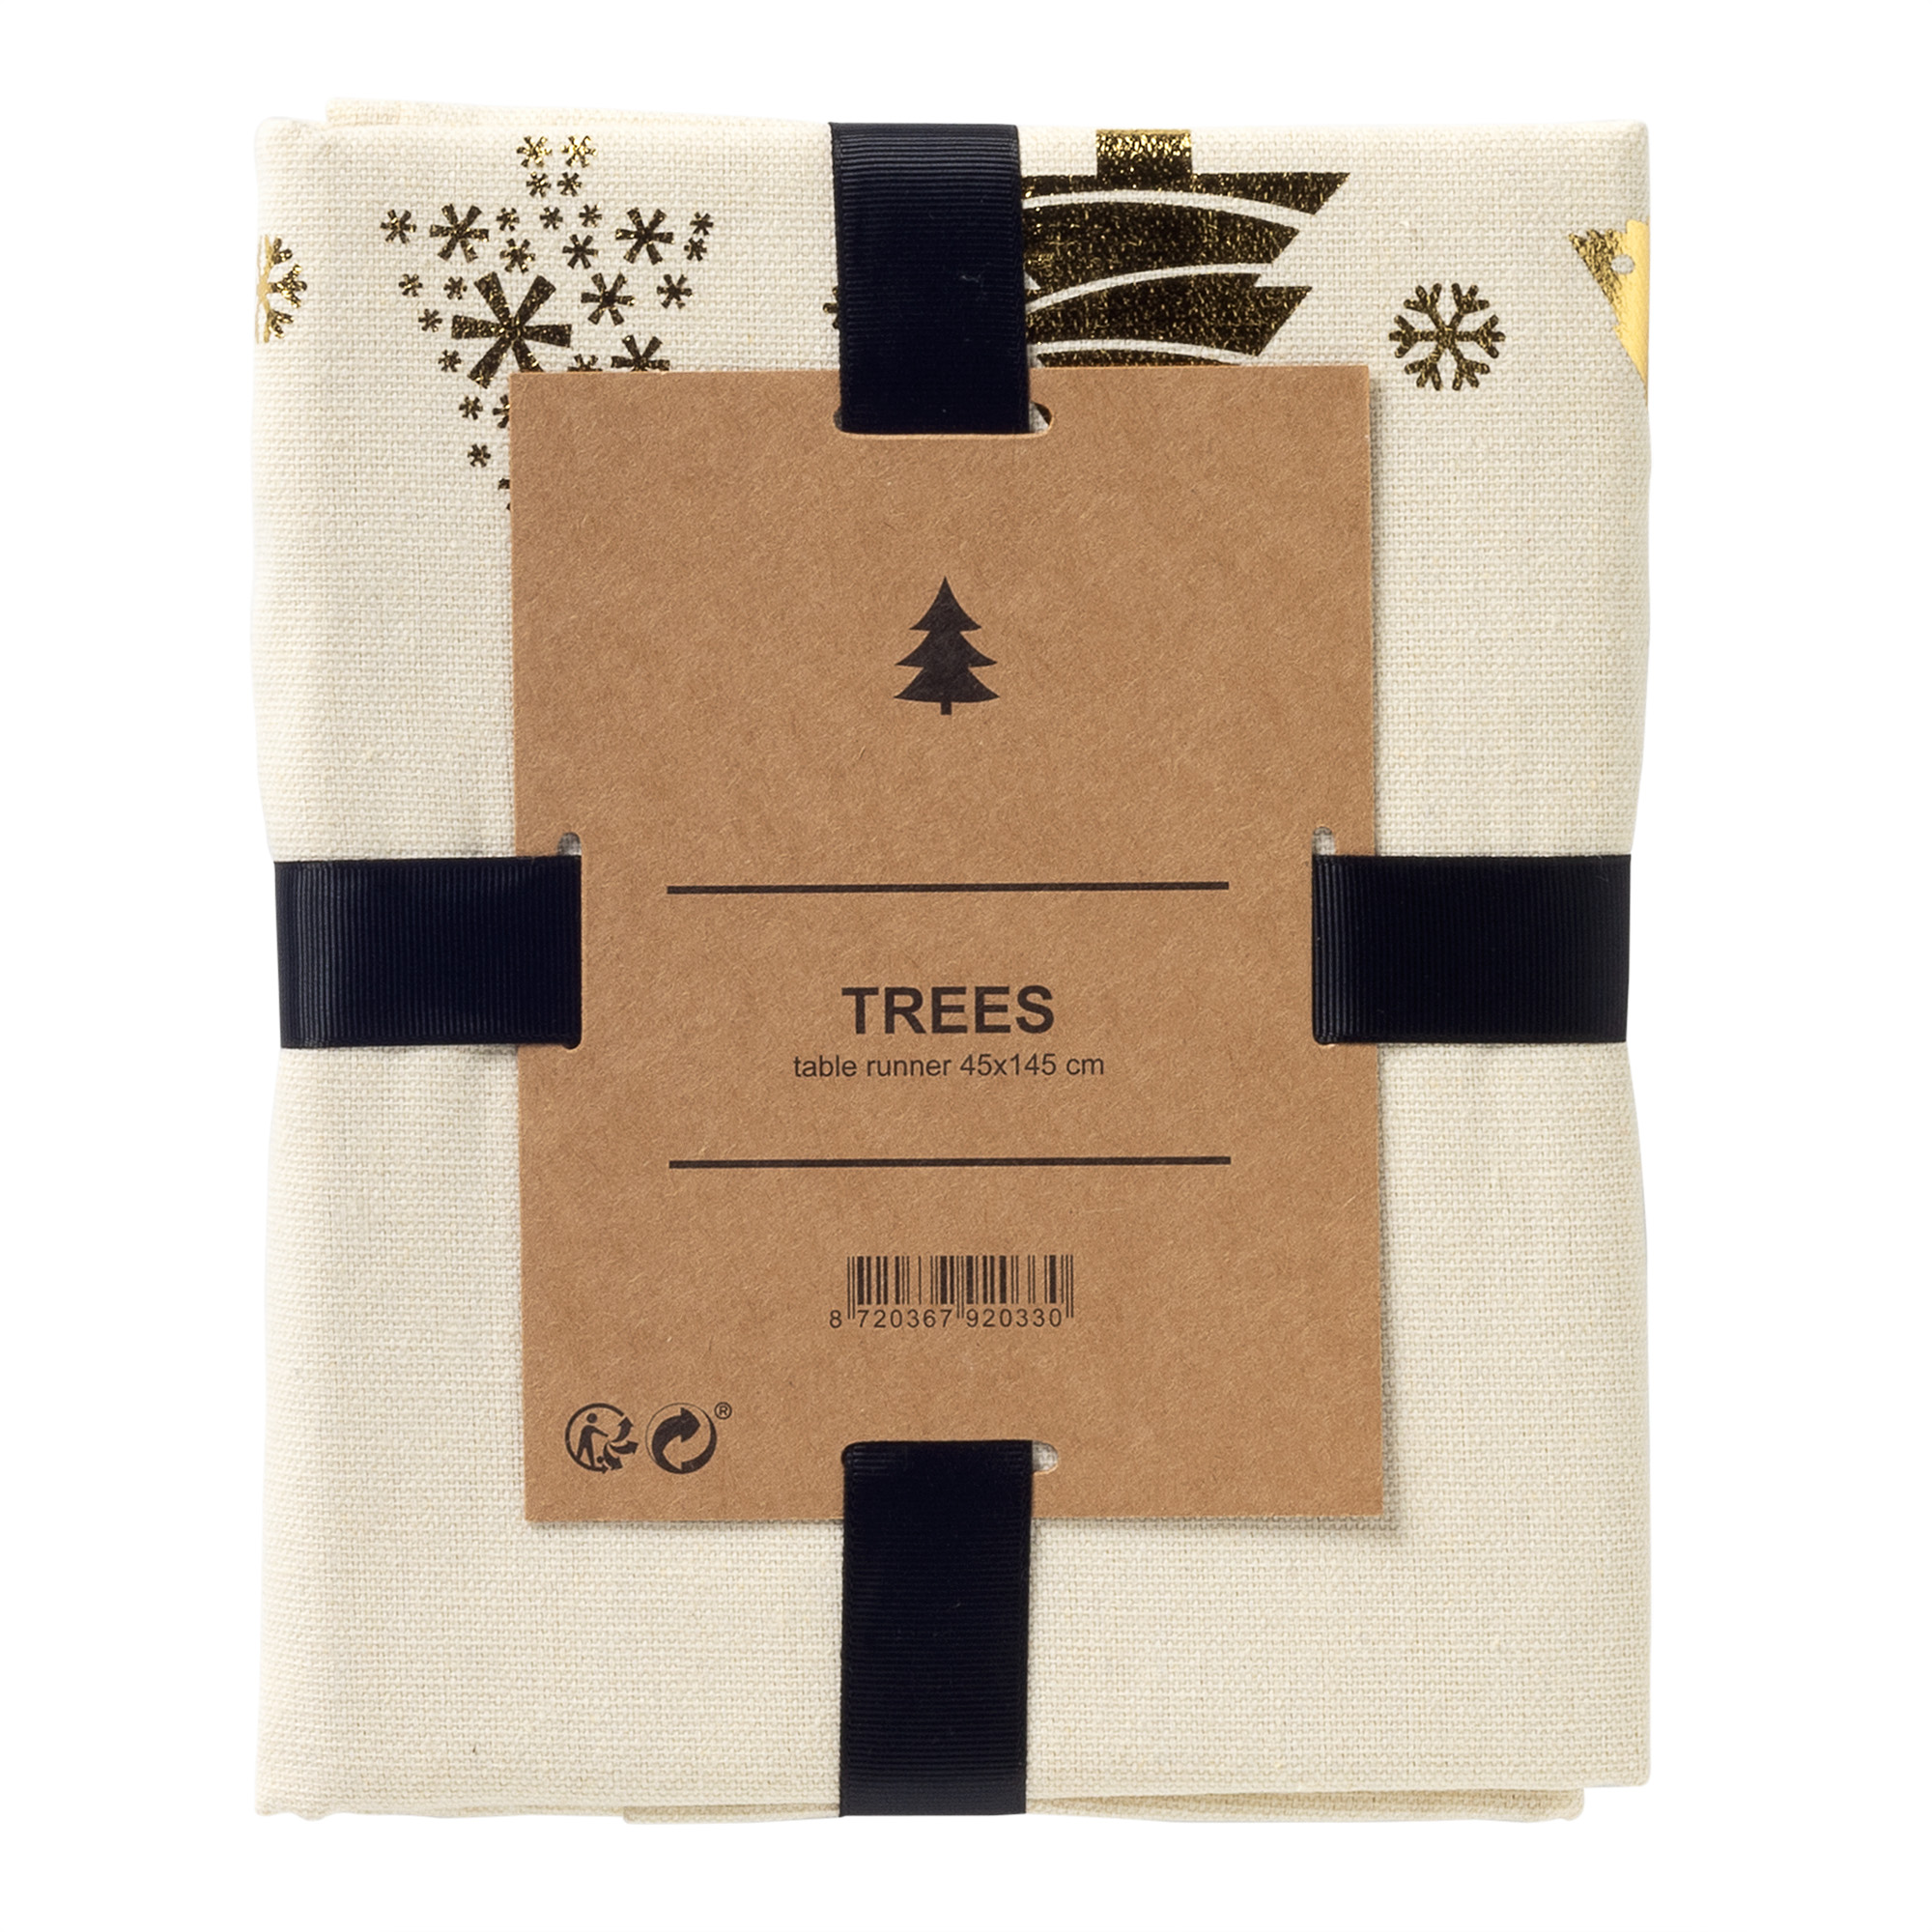 TREES - table runner 45x145 cm - with Christmas trees - Whisper White – white